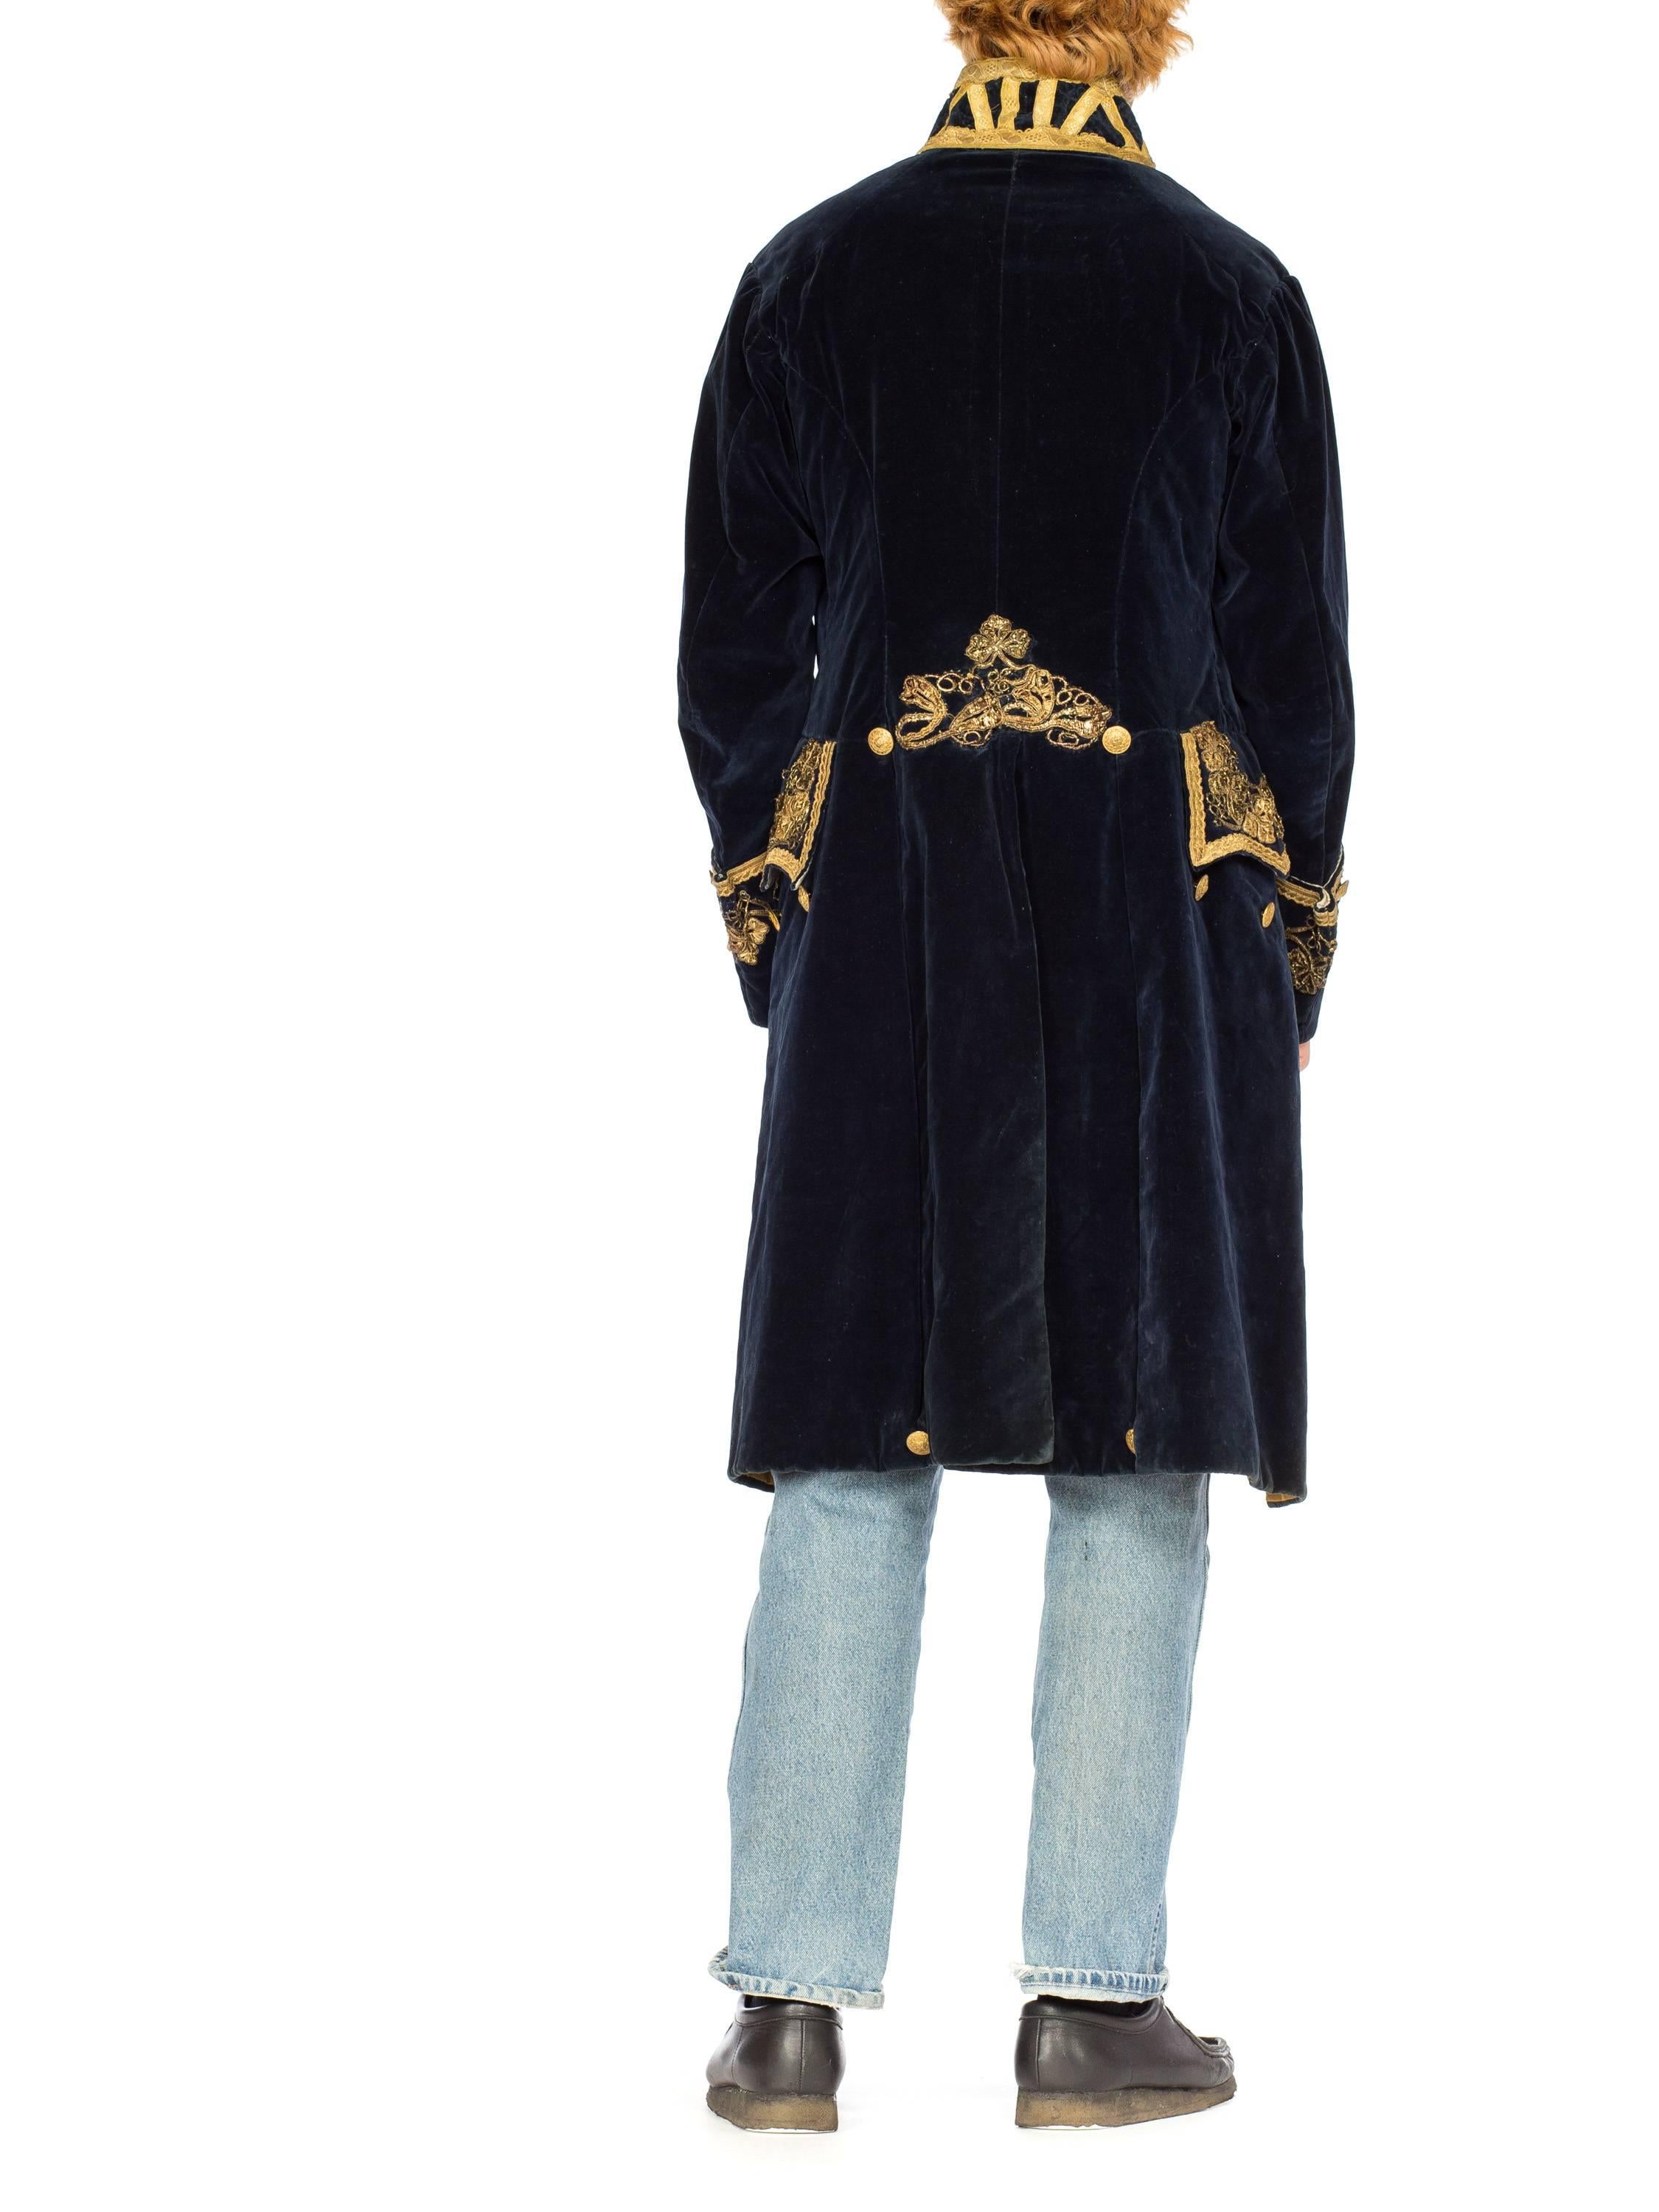 18th century coat